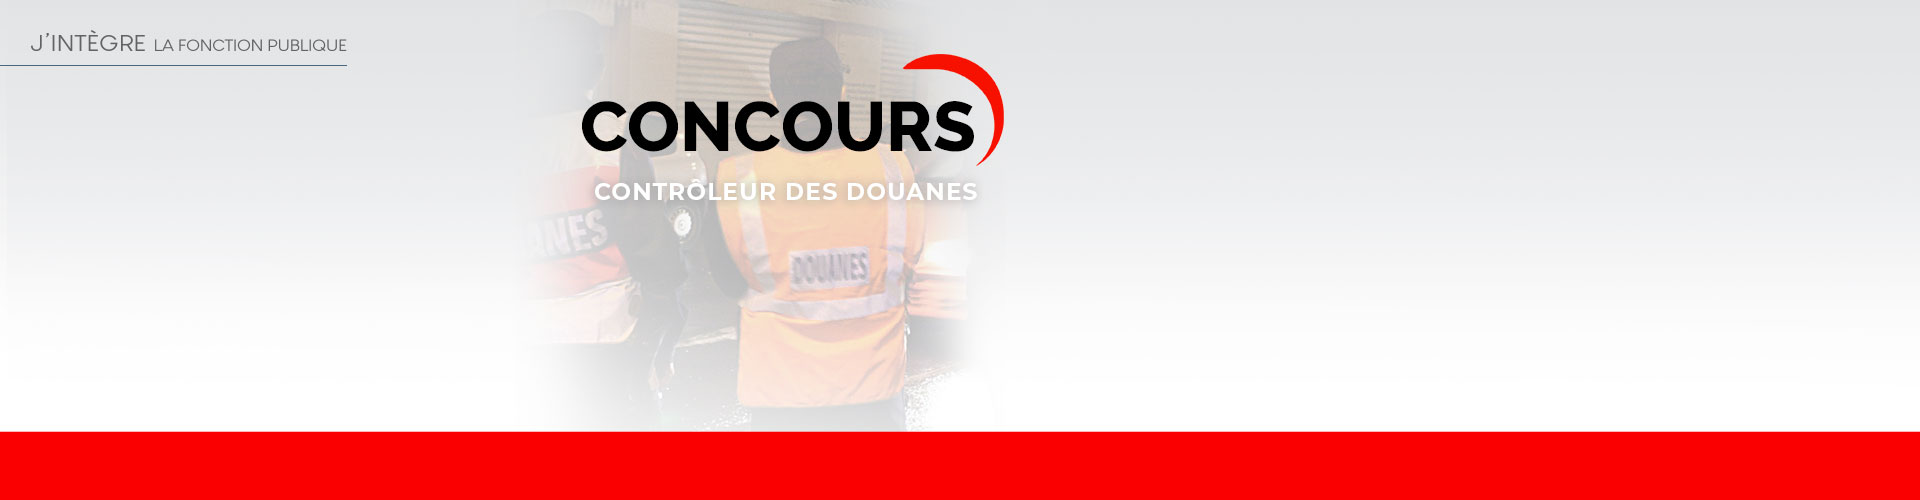 Concours controleur des douanes - Dunod